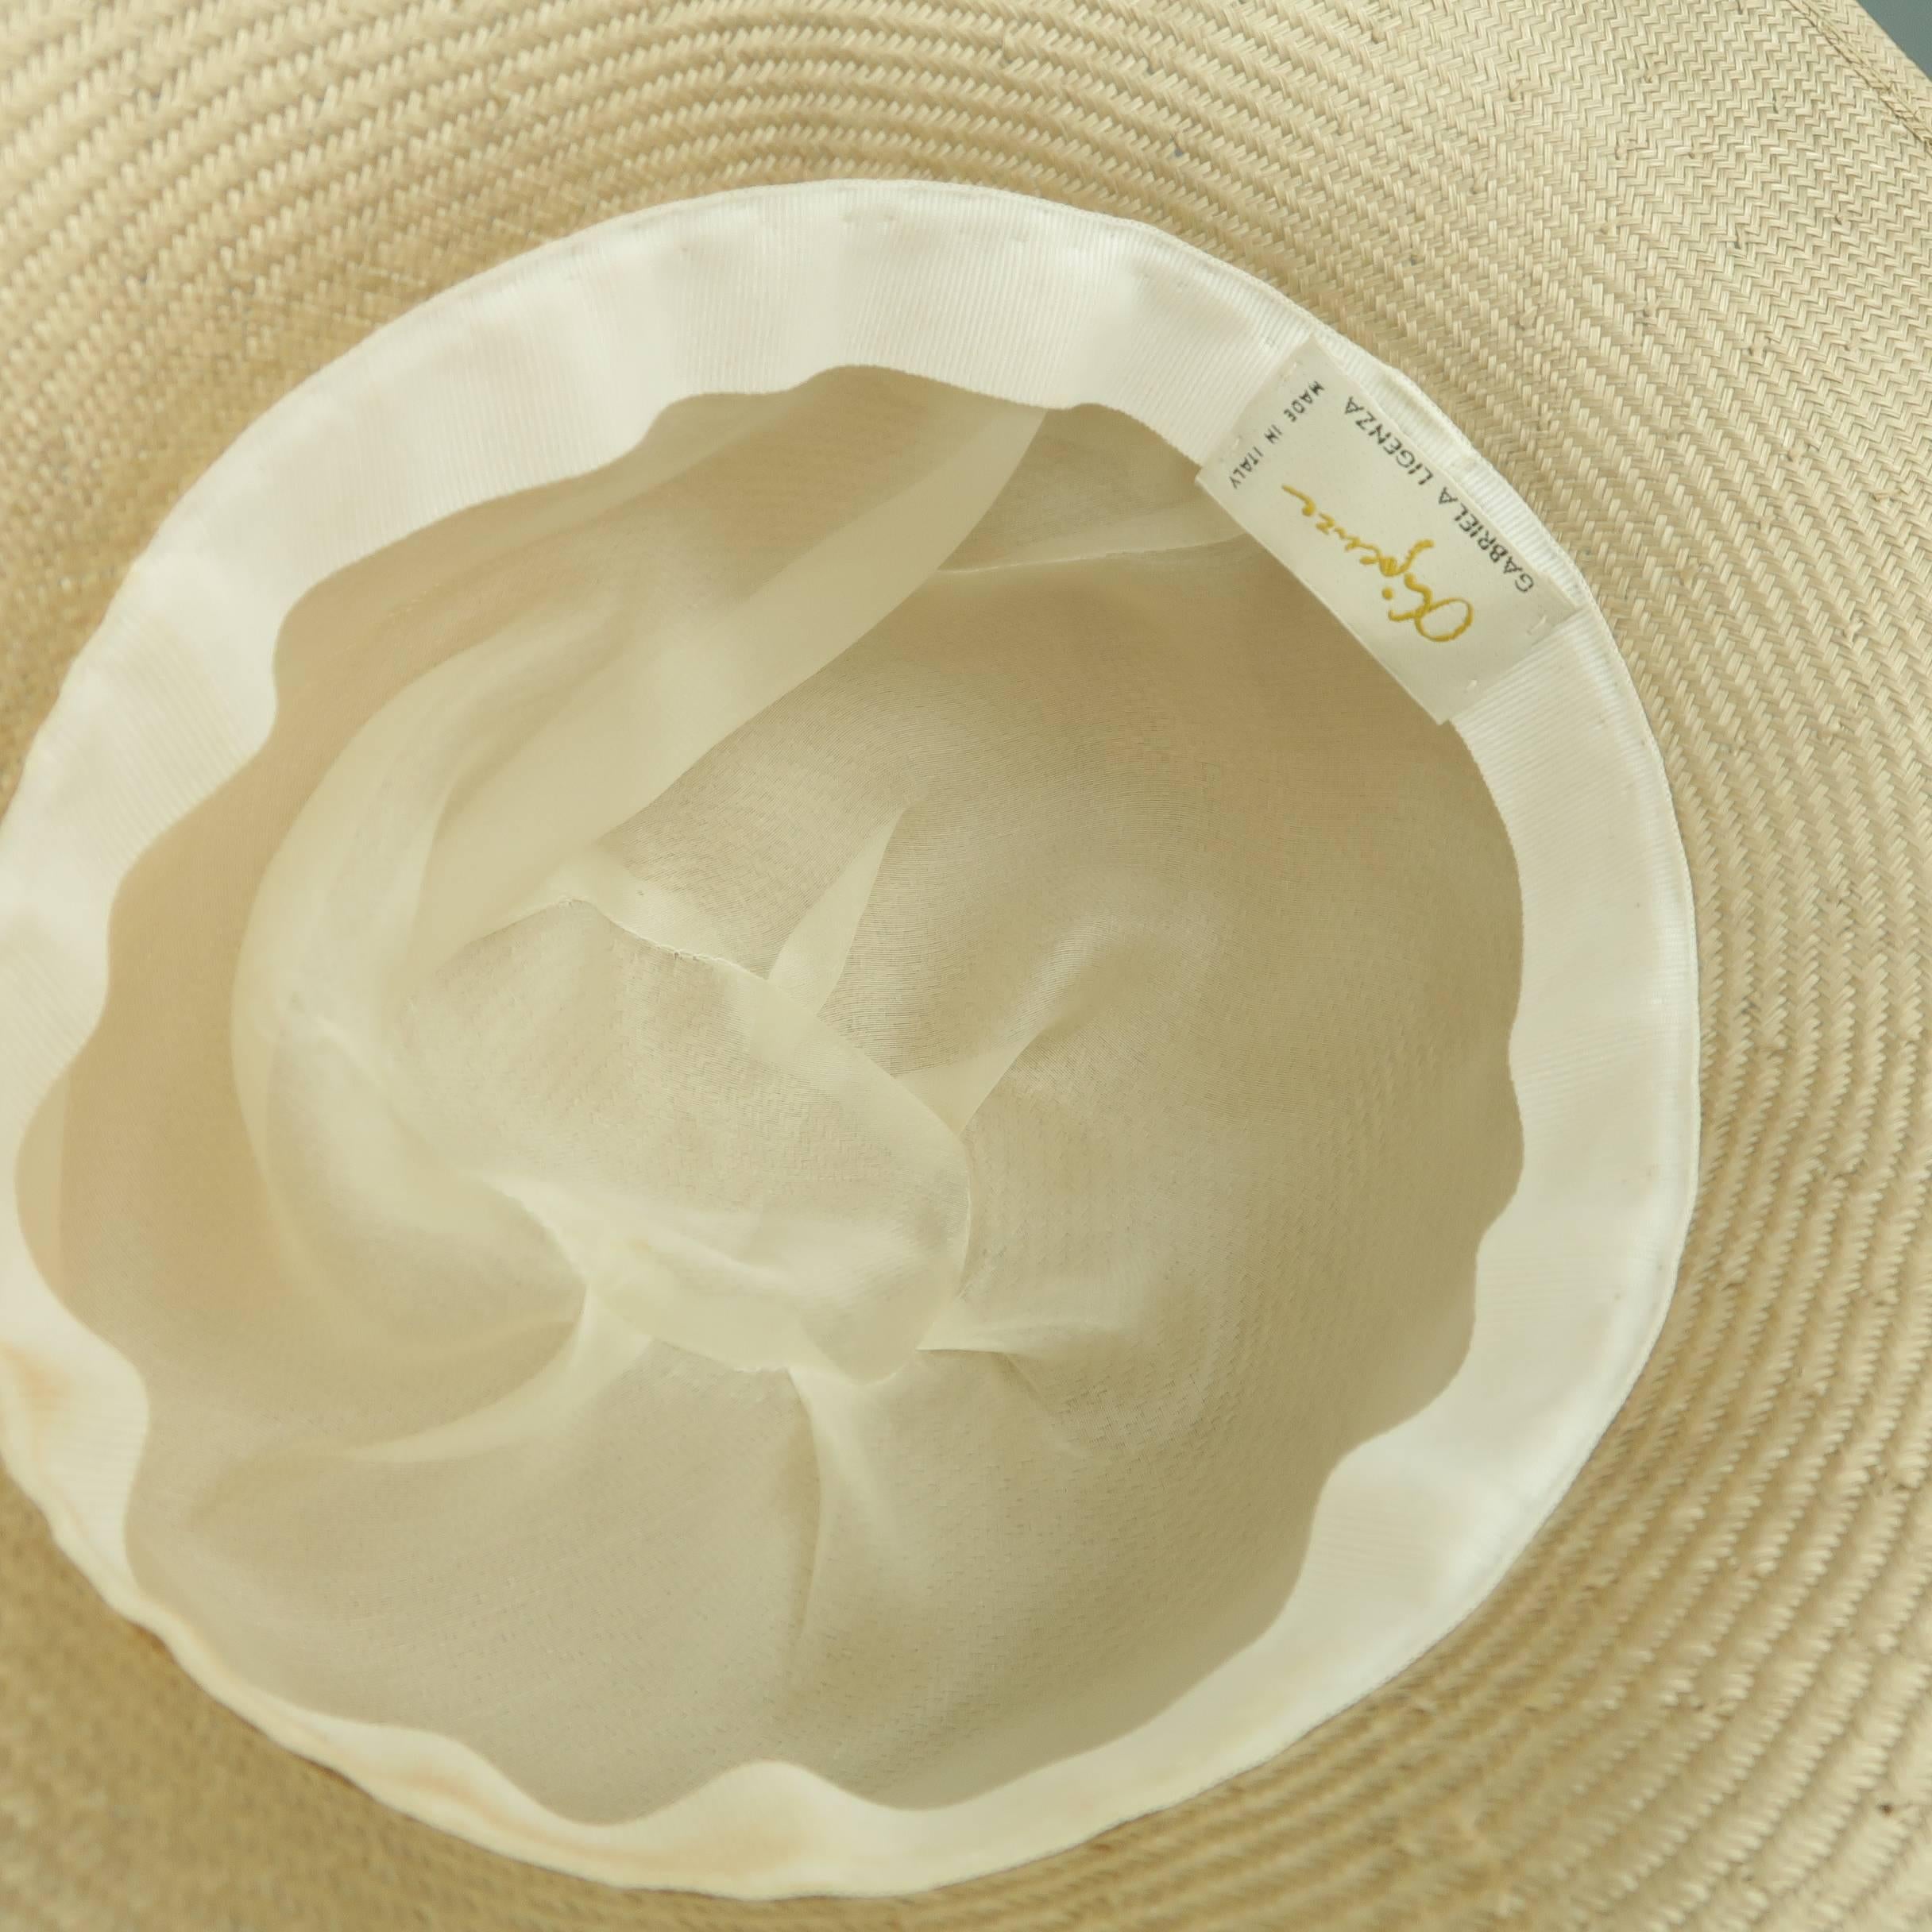 GABRIELA LIGENZA Blonde Beige Cream Silk Organza Flower Straw Sun Hat 5